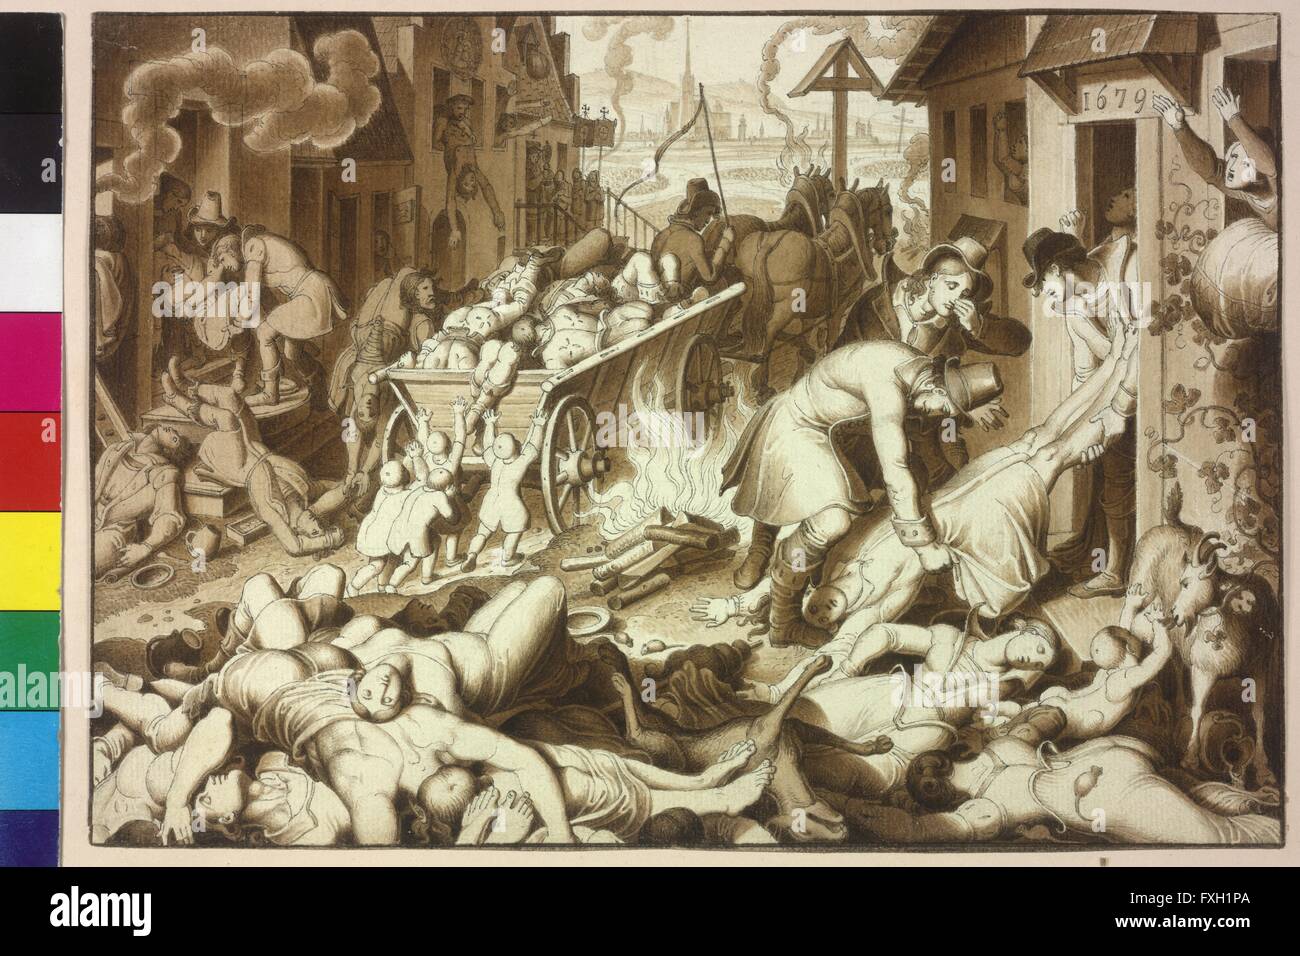 1679 sterben in Wien von Jänner bis November 122.849 Menschen an der großen Pest Stock Photo